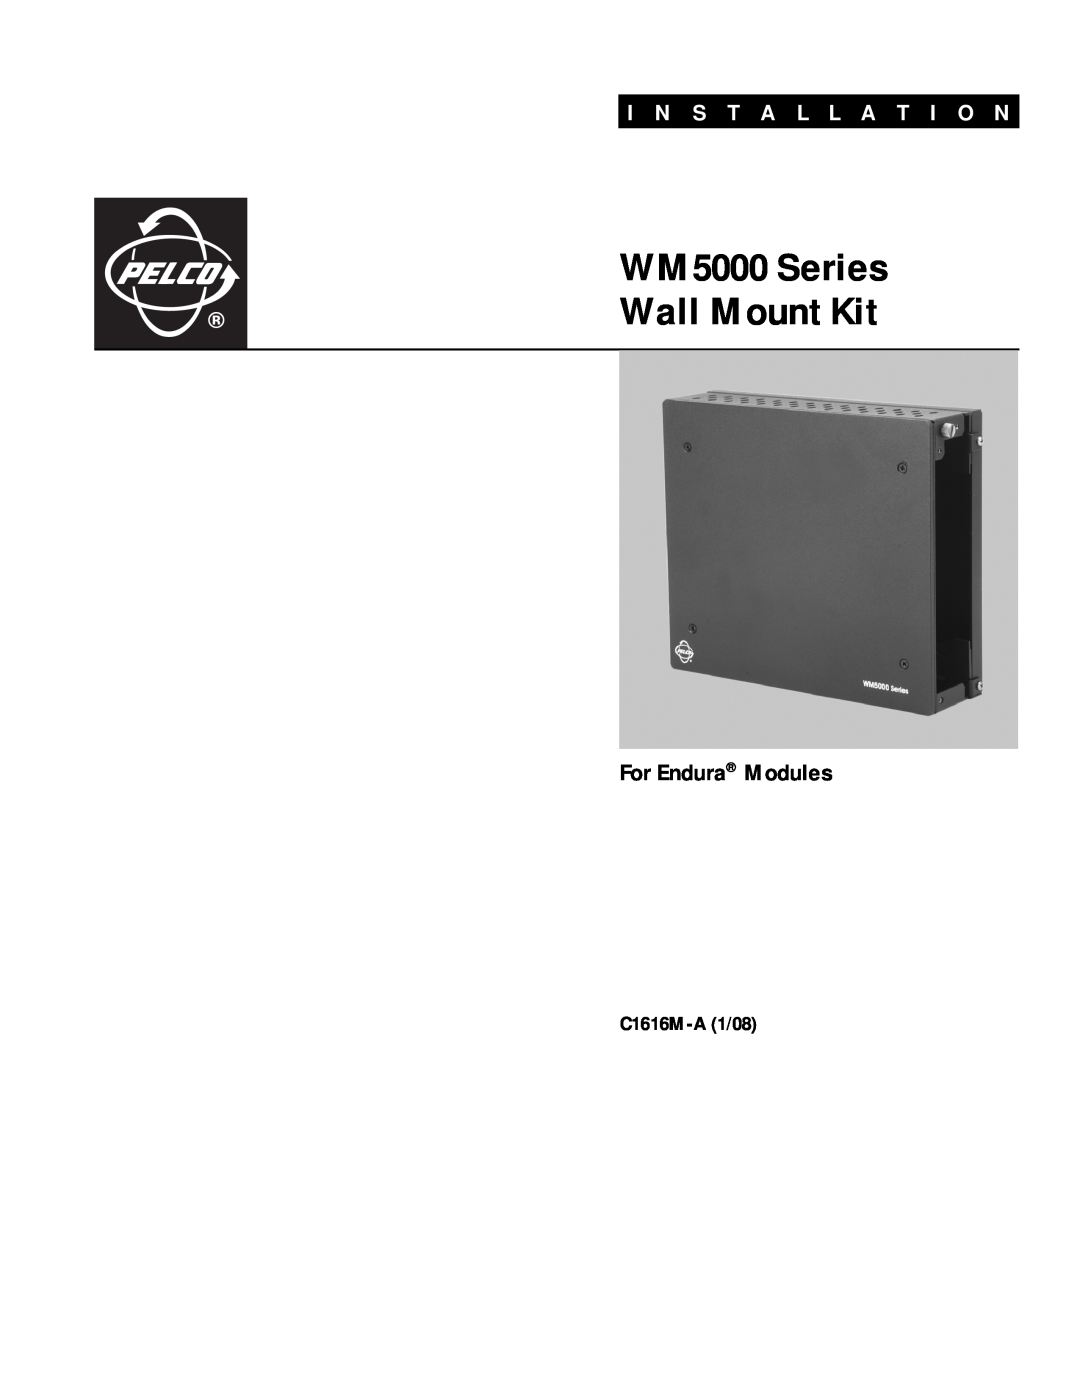 Pelco W M 5000 Series manual For Endura Modules, WM5000 Series Wall Mount Kit, I N S T A L L A T I O N, C1616M-A1/08 